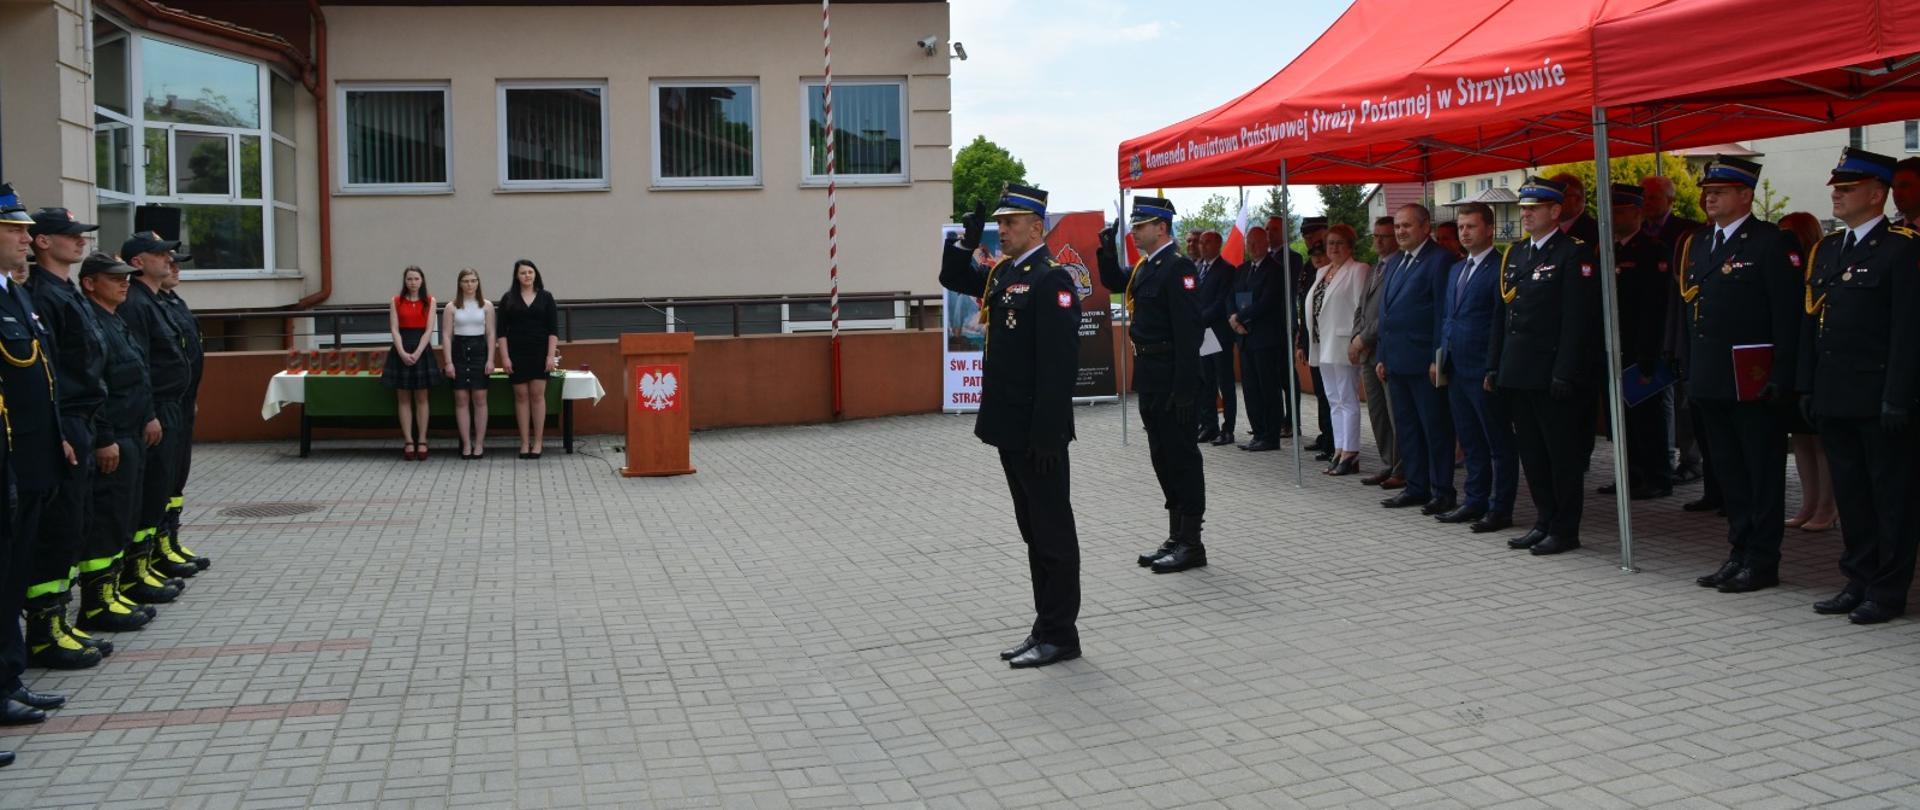 Zdjęcie wykonane na zewnątrz. Po lewej stronie zdjęcia dwóch oficerów Państwowej Straży Pożarnej salutując pododdziałowi. W tle stoją goście uczestniczący w uroczystości.